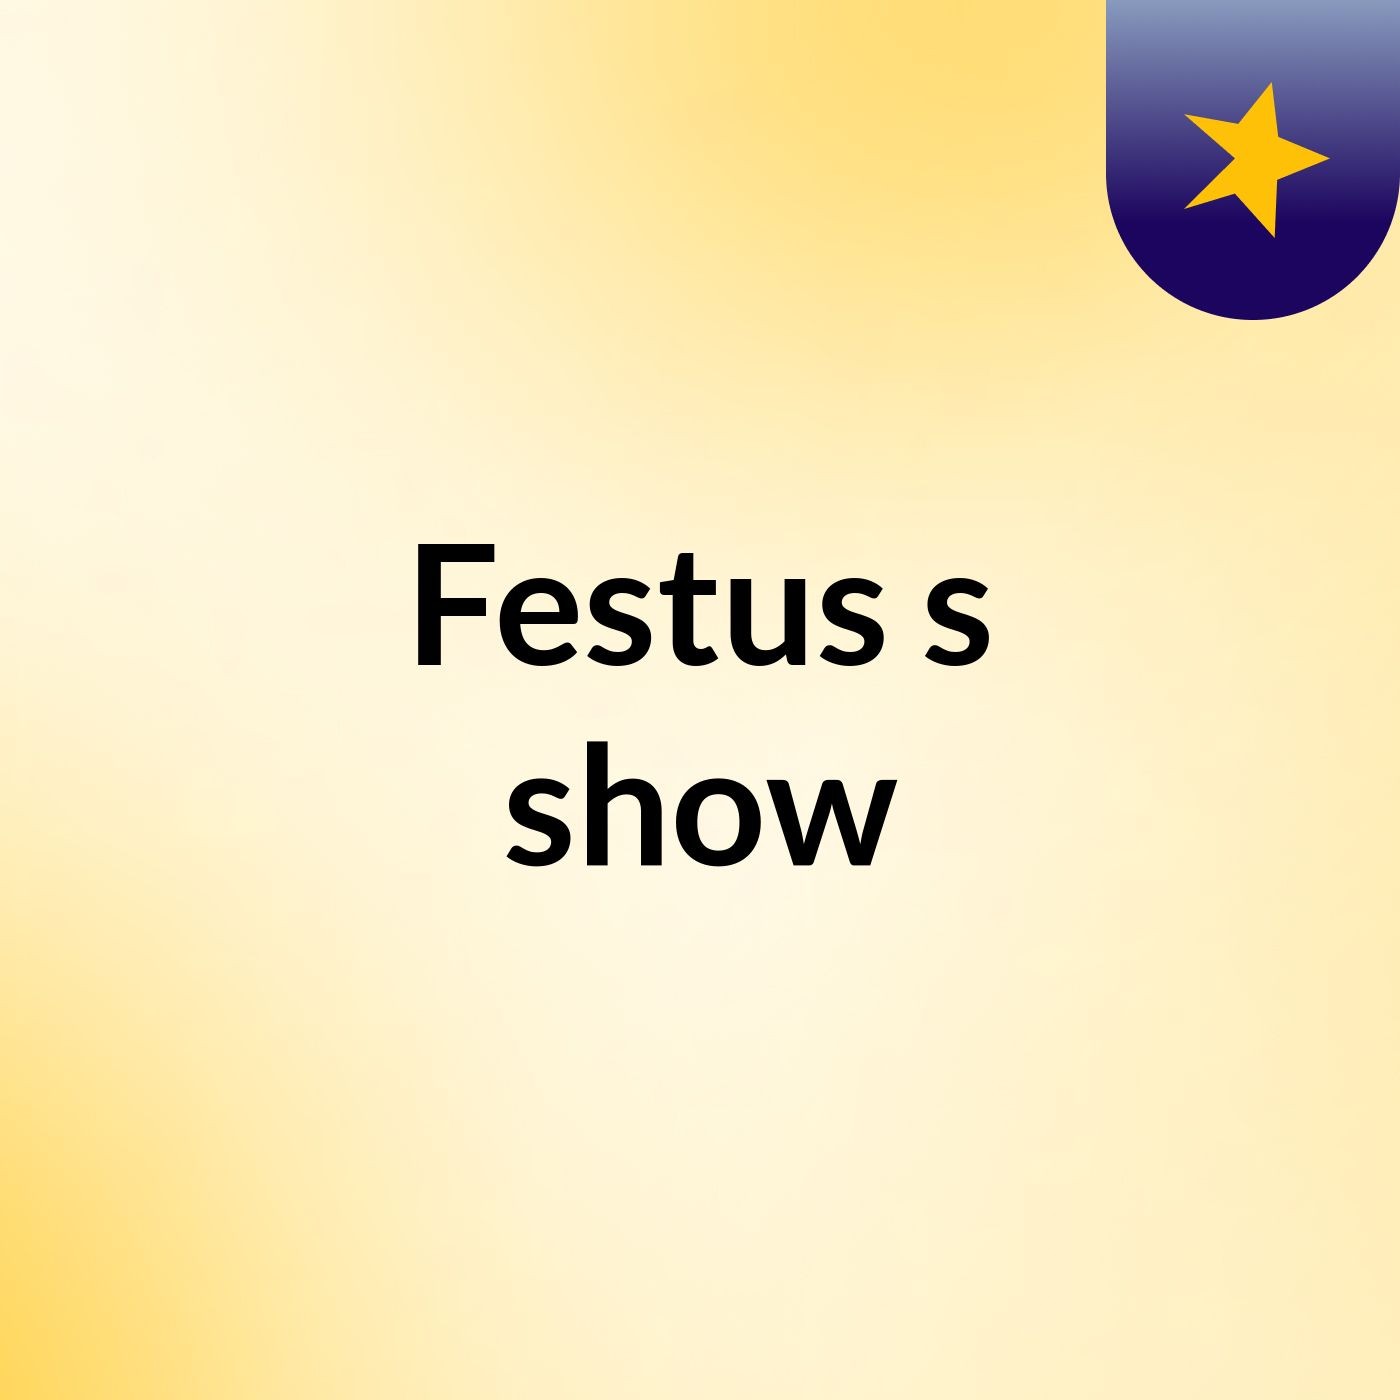 Episode 2 - Festus's show